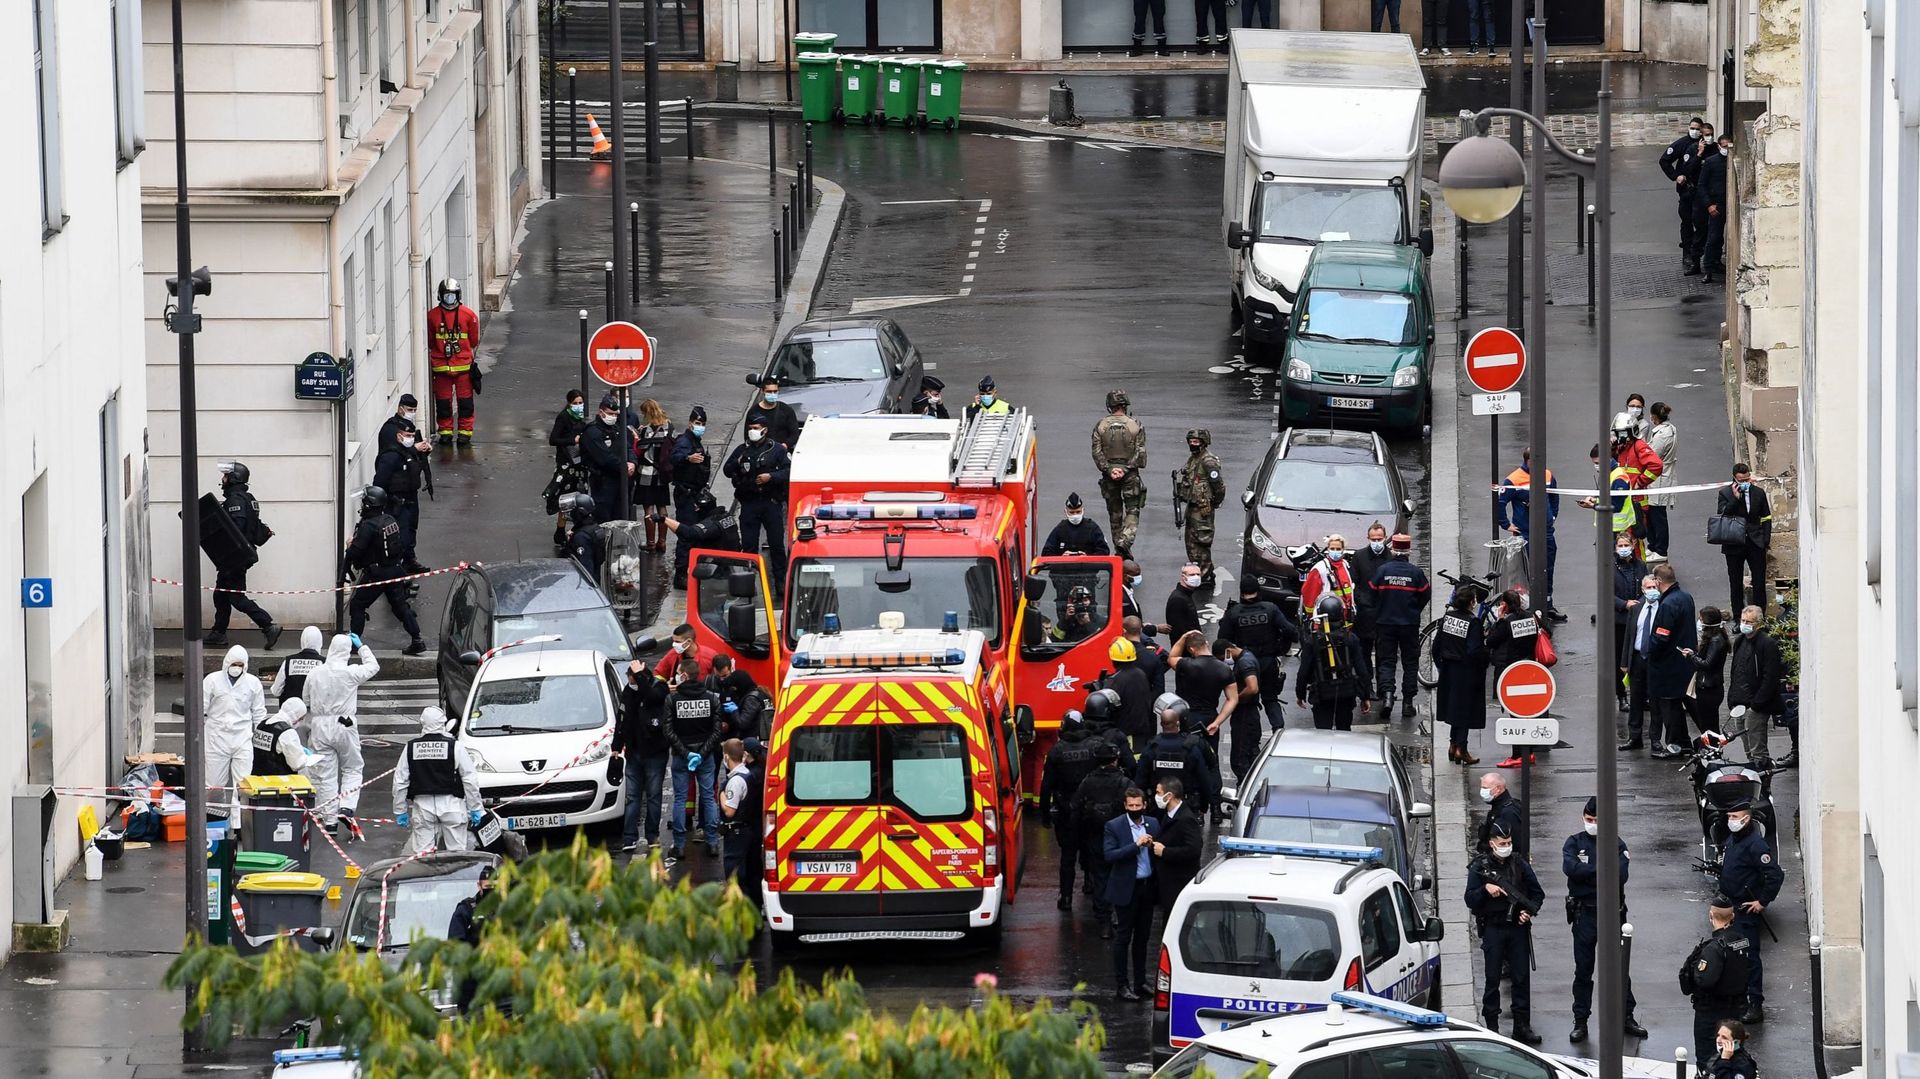 La police inspectent les lieux d'une attaque ce vendredi devant les anciens bureaux de Charlie Hebdo, 25 septembre 2020